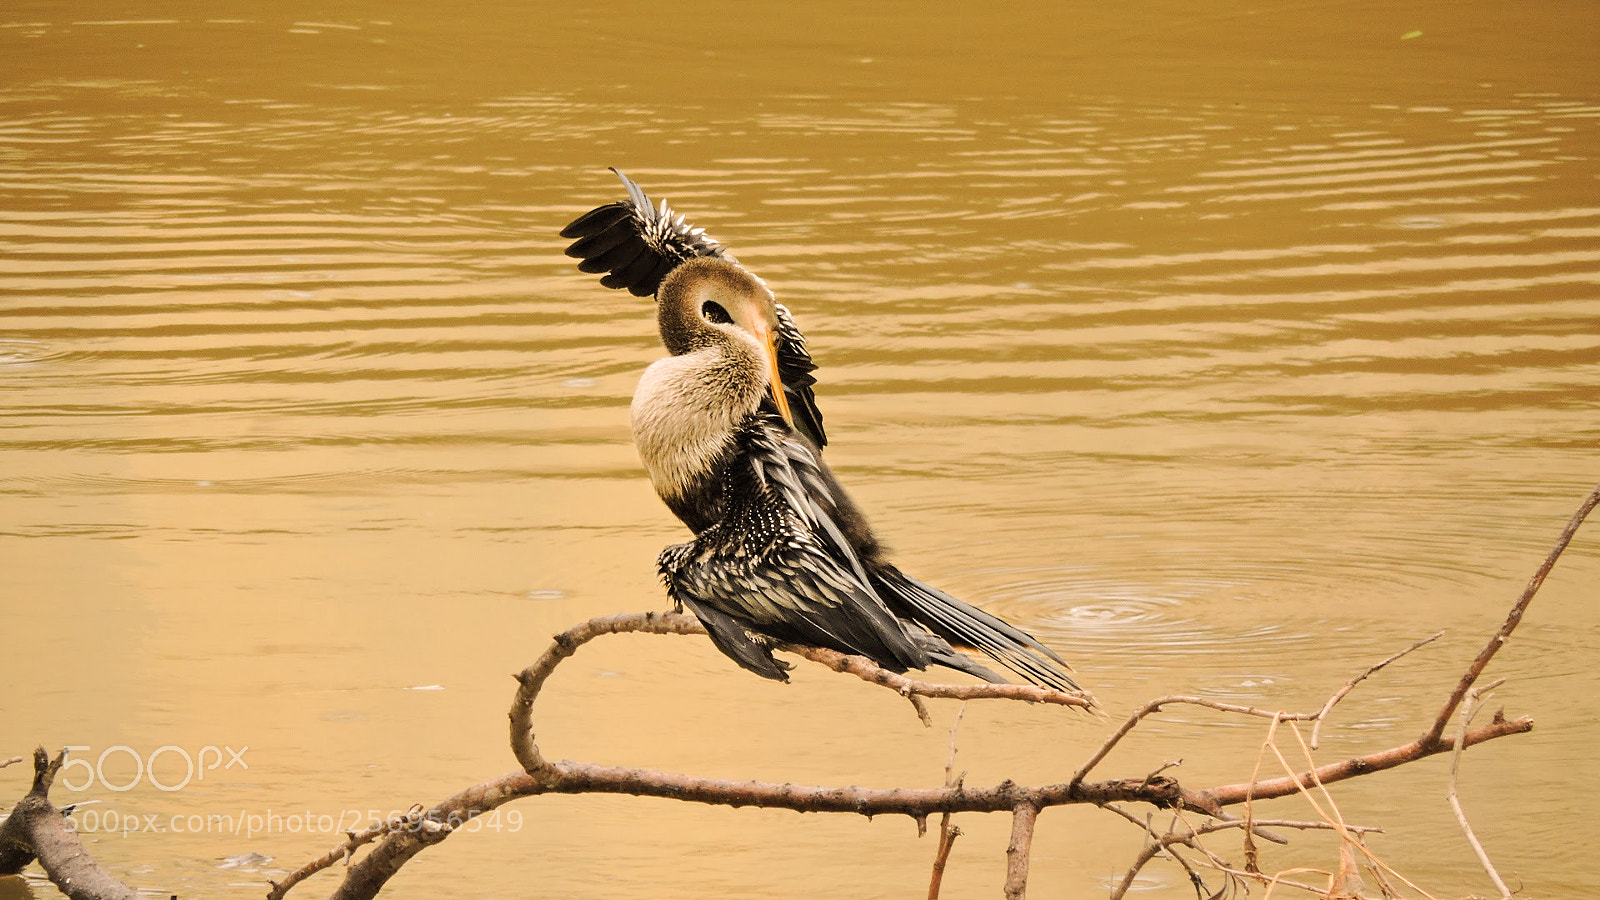 Nikon Coolpix P530 sample photo. Sorocaba river's bird photography